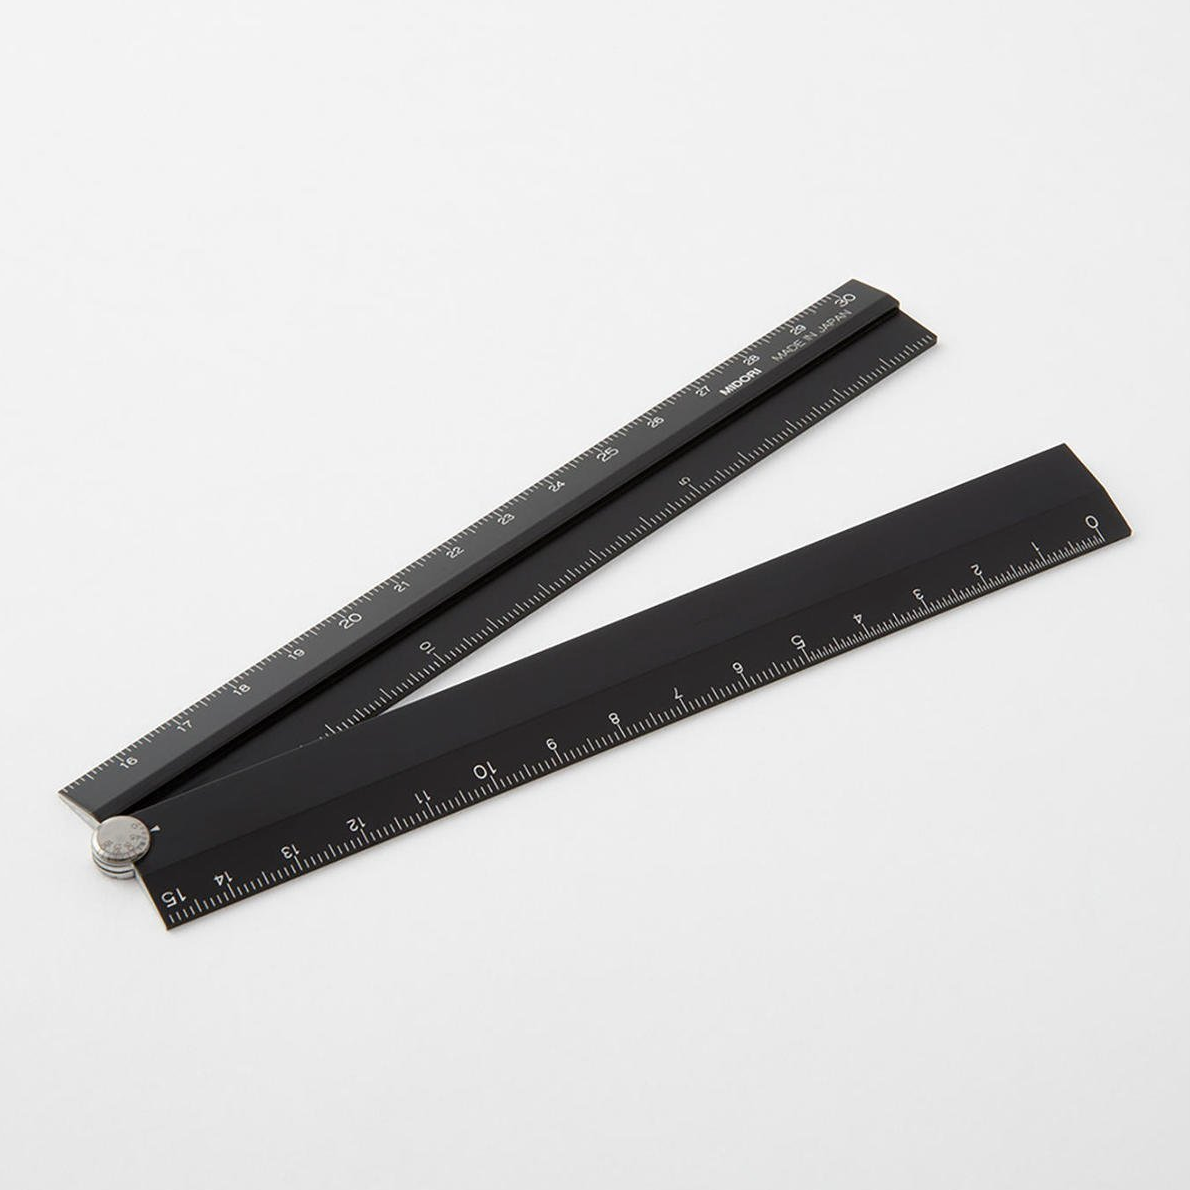 Negra plegable (16-31 cms)